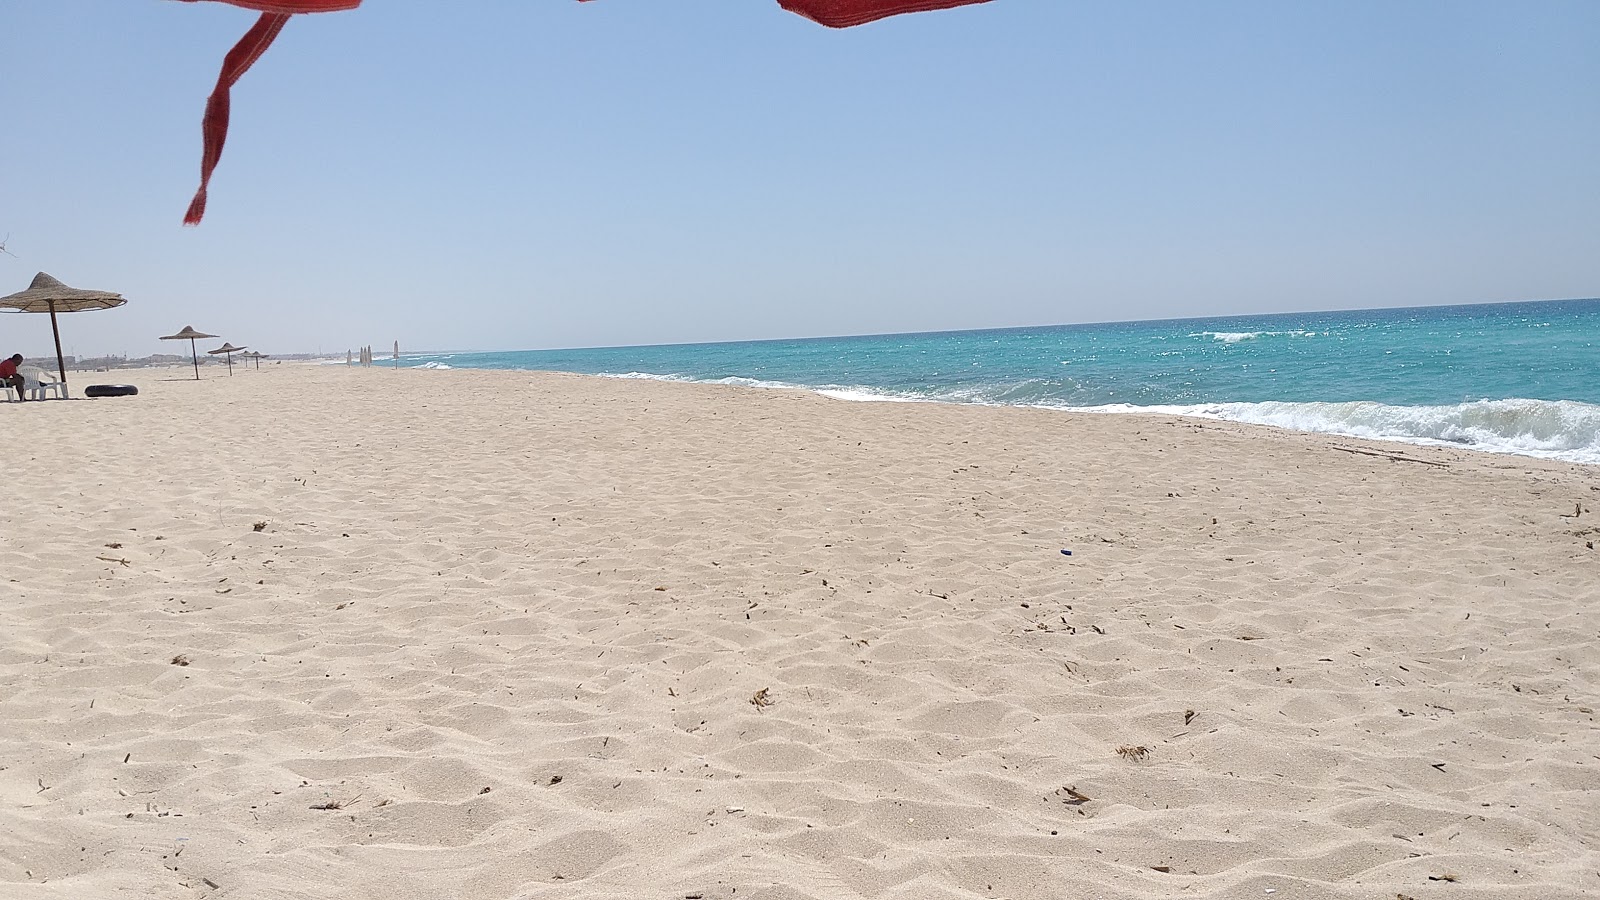 Fotografie cu Al Bahri Beach cu o suprafață de apa pură turcoaz